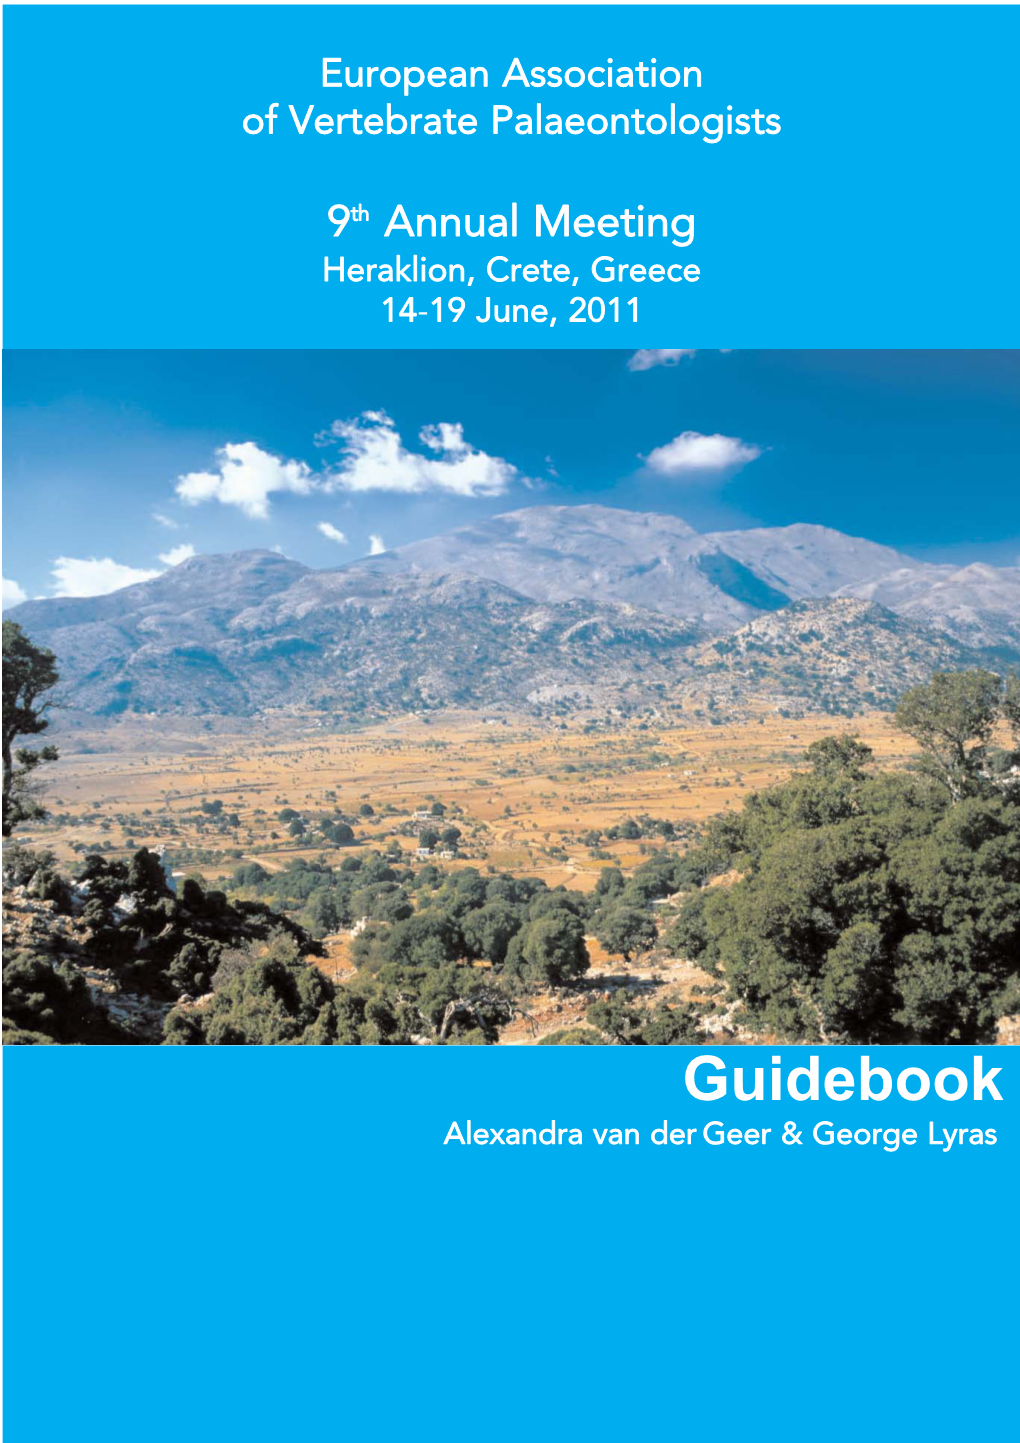 Guidebook Alexandra Van Der Geer & George Lyras 9Th Annual Meeting Heraklion, Crete, Greece 14-19 June, 2011